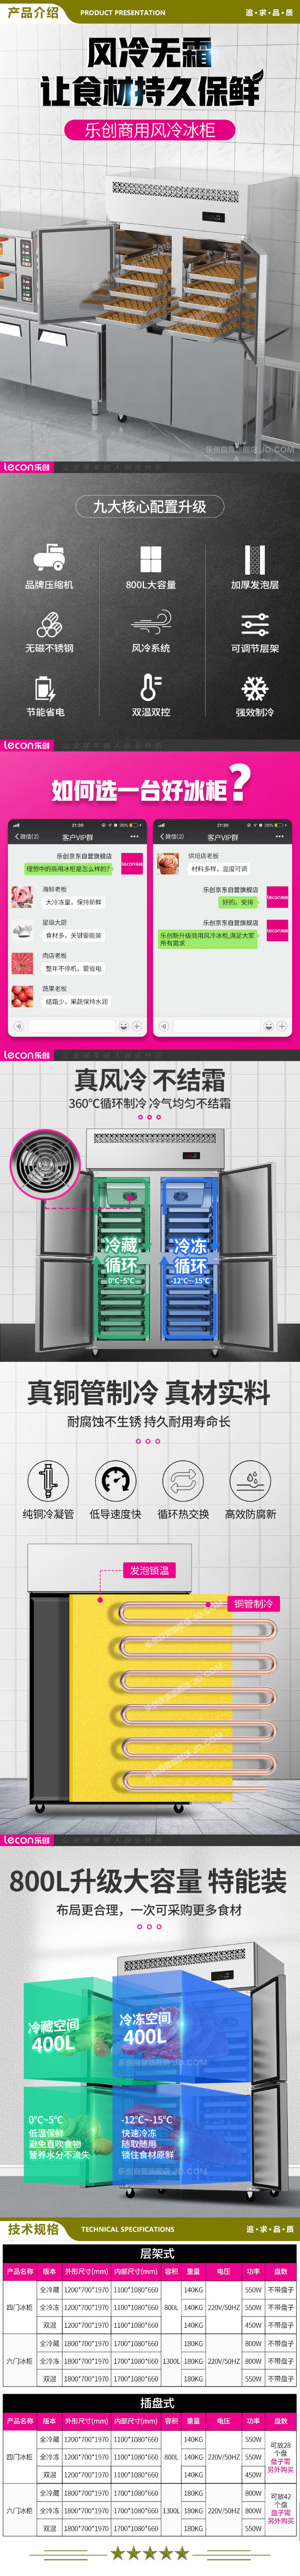 乐创(lecon) LC-SMBG01 冷冻商用四门冰柜厨房冰箱双温冷藏冷冻餐饮立式后厨保鲜柜冷柜风冷插盘式  2.jpg